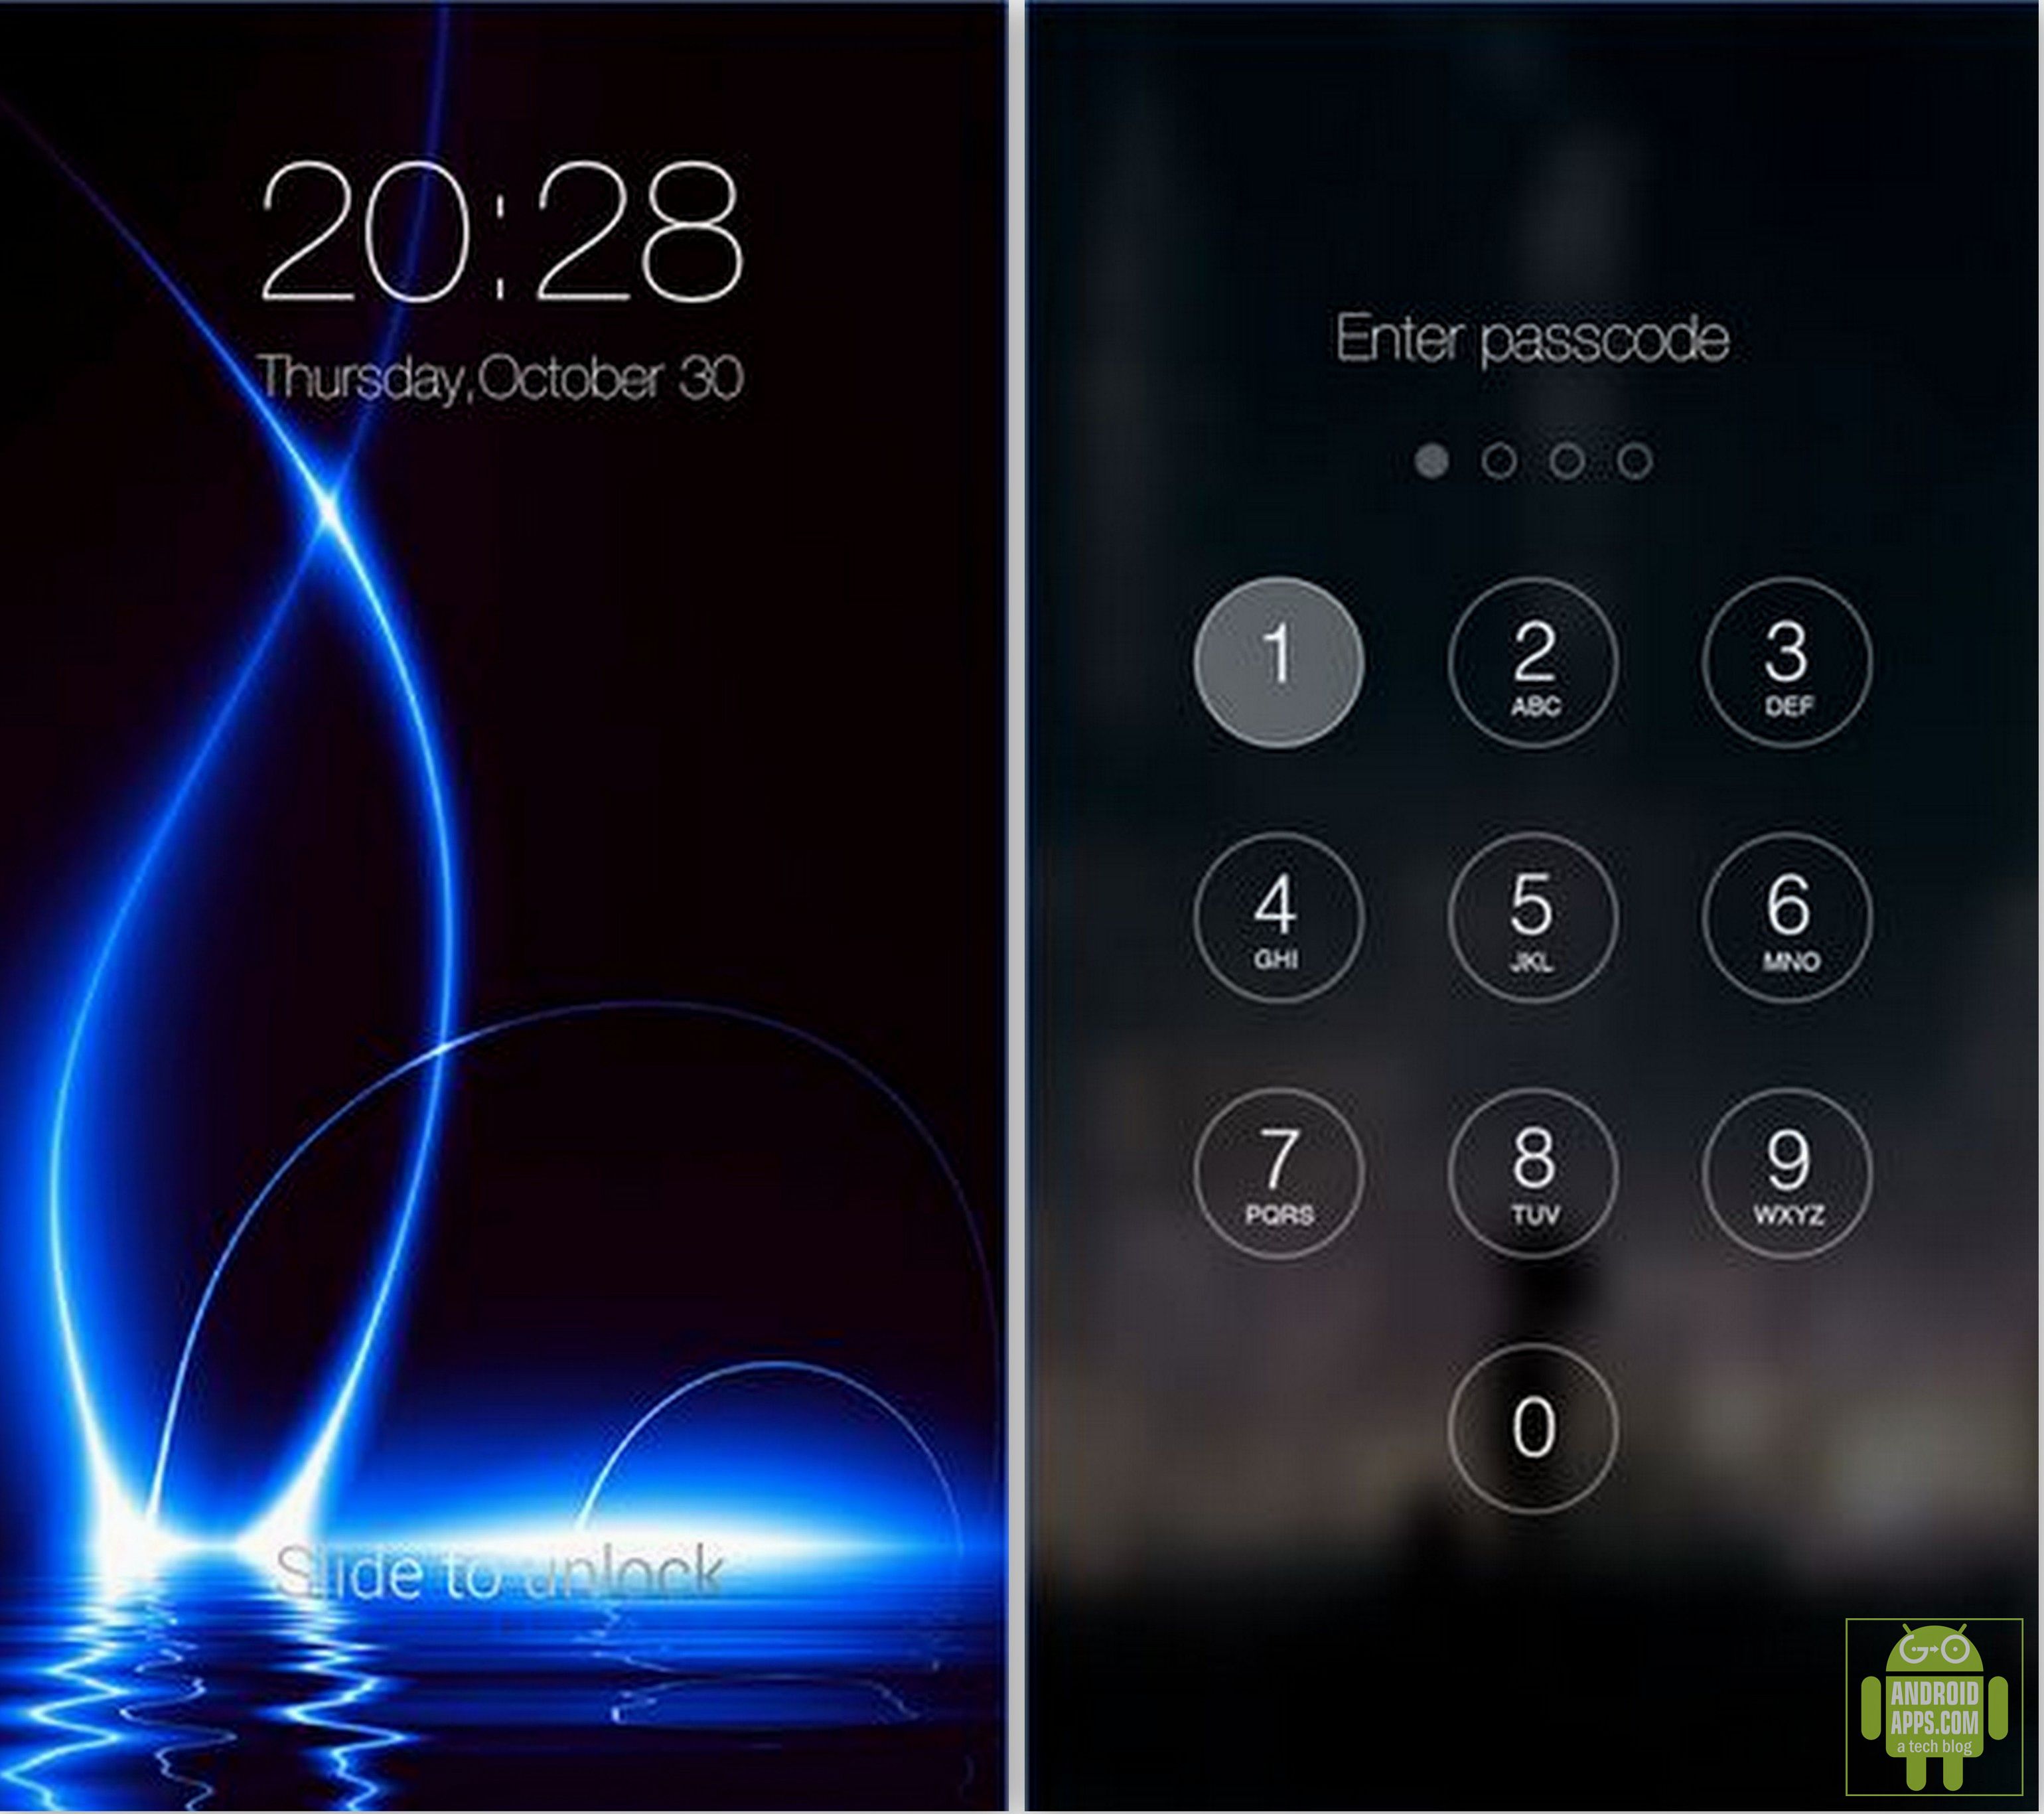 app lock wallpaper,light,text,screenshot,gadget,technology